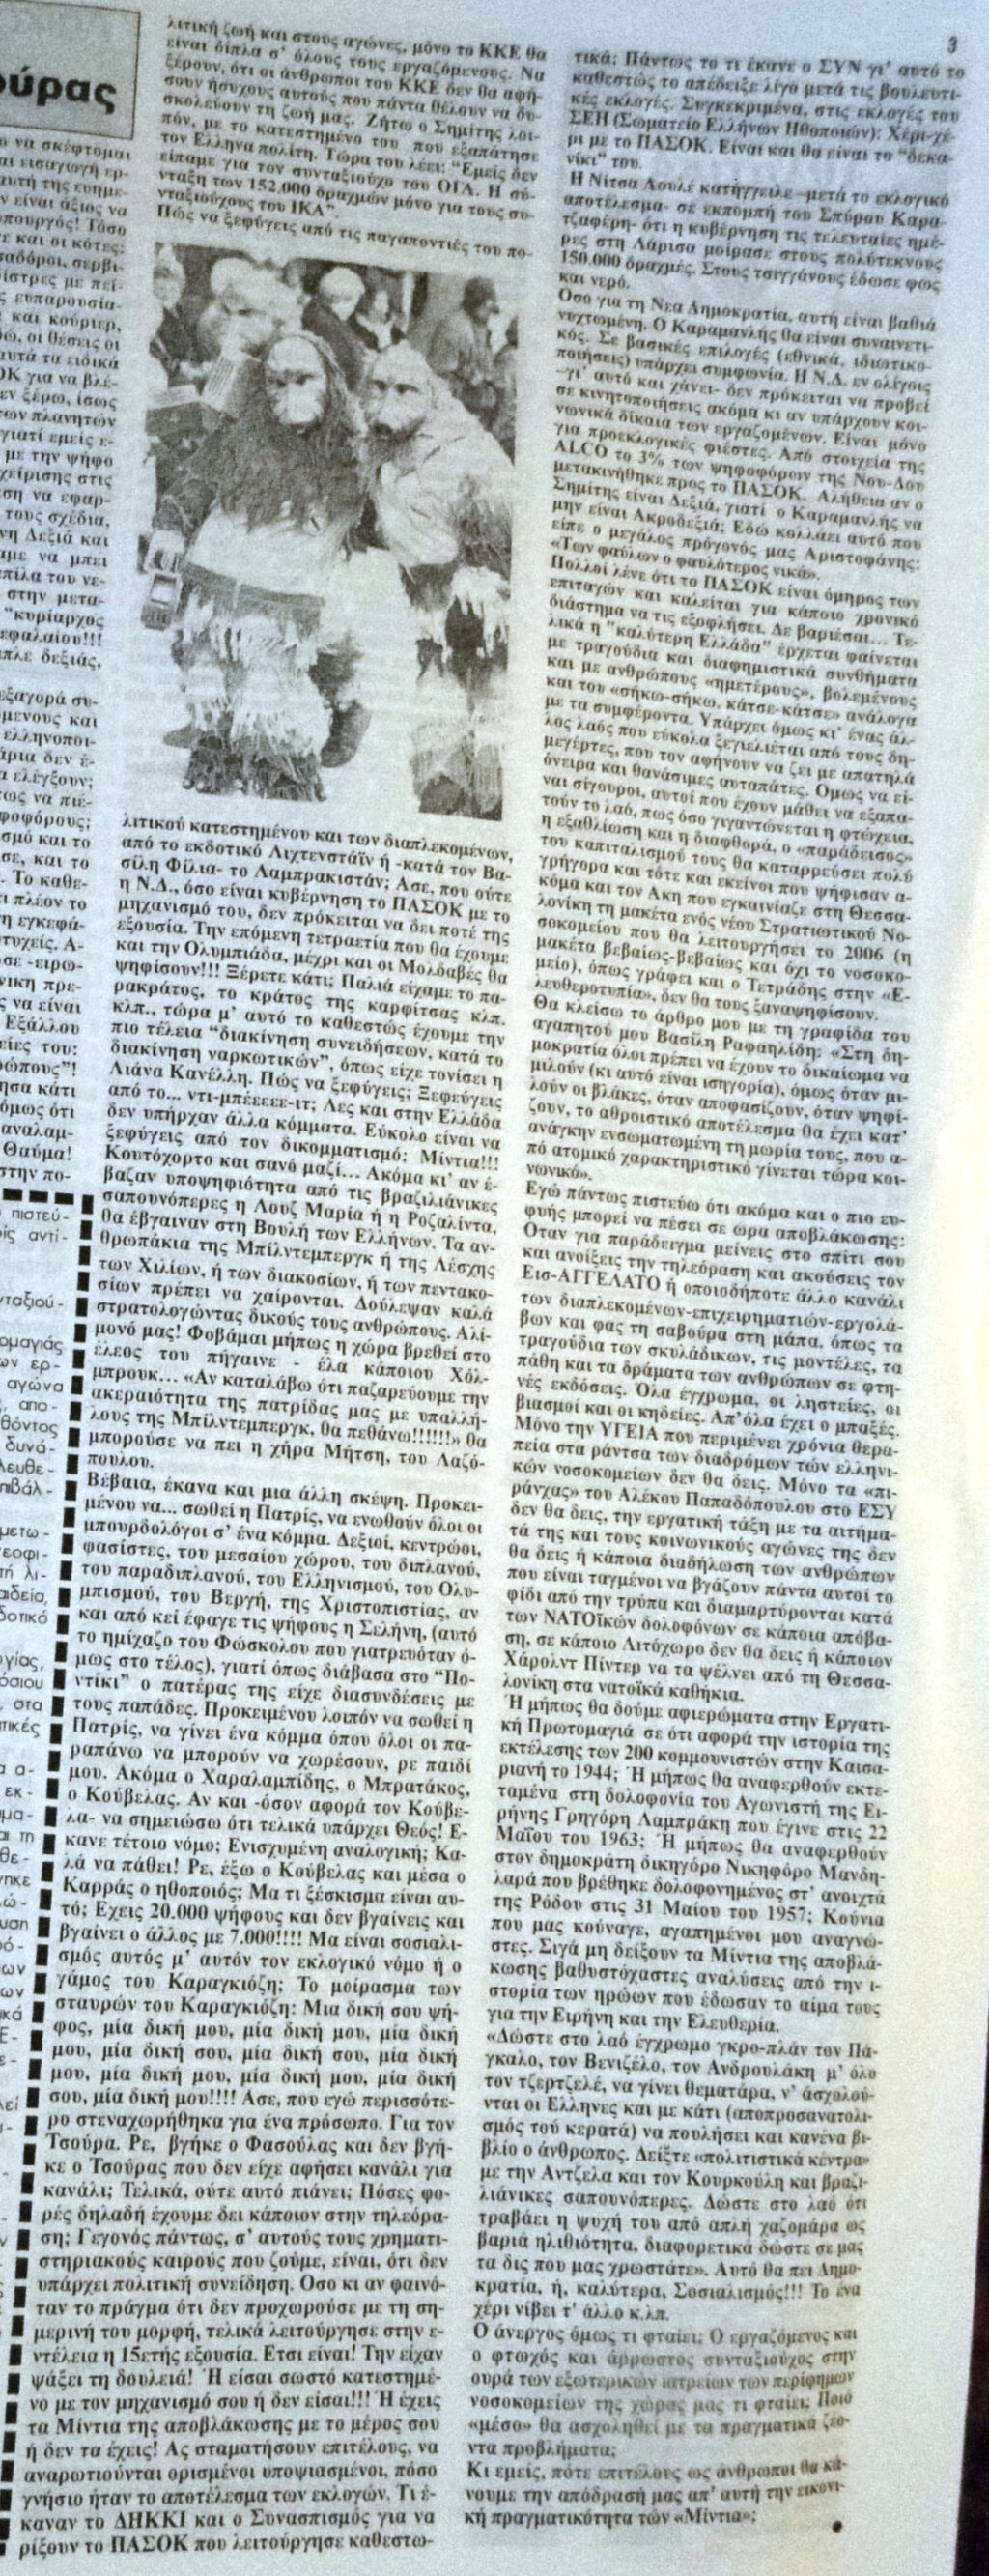 Φύλλο 173 - Ζήτω τα «Μίντια» της αποβλάκωσης και της σαβούρας - τής Ρένας Παπαπαναγιώτου - Μάιος 2000 173-3h16